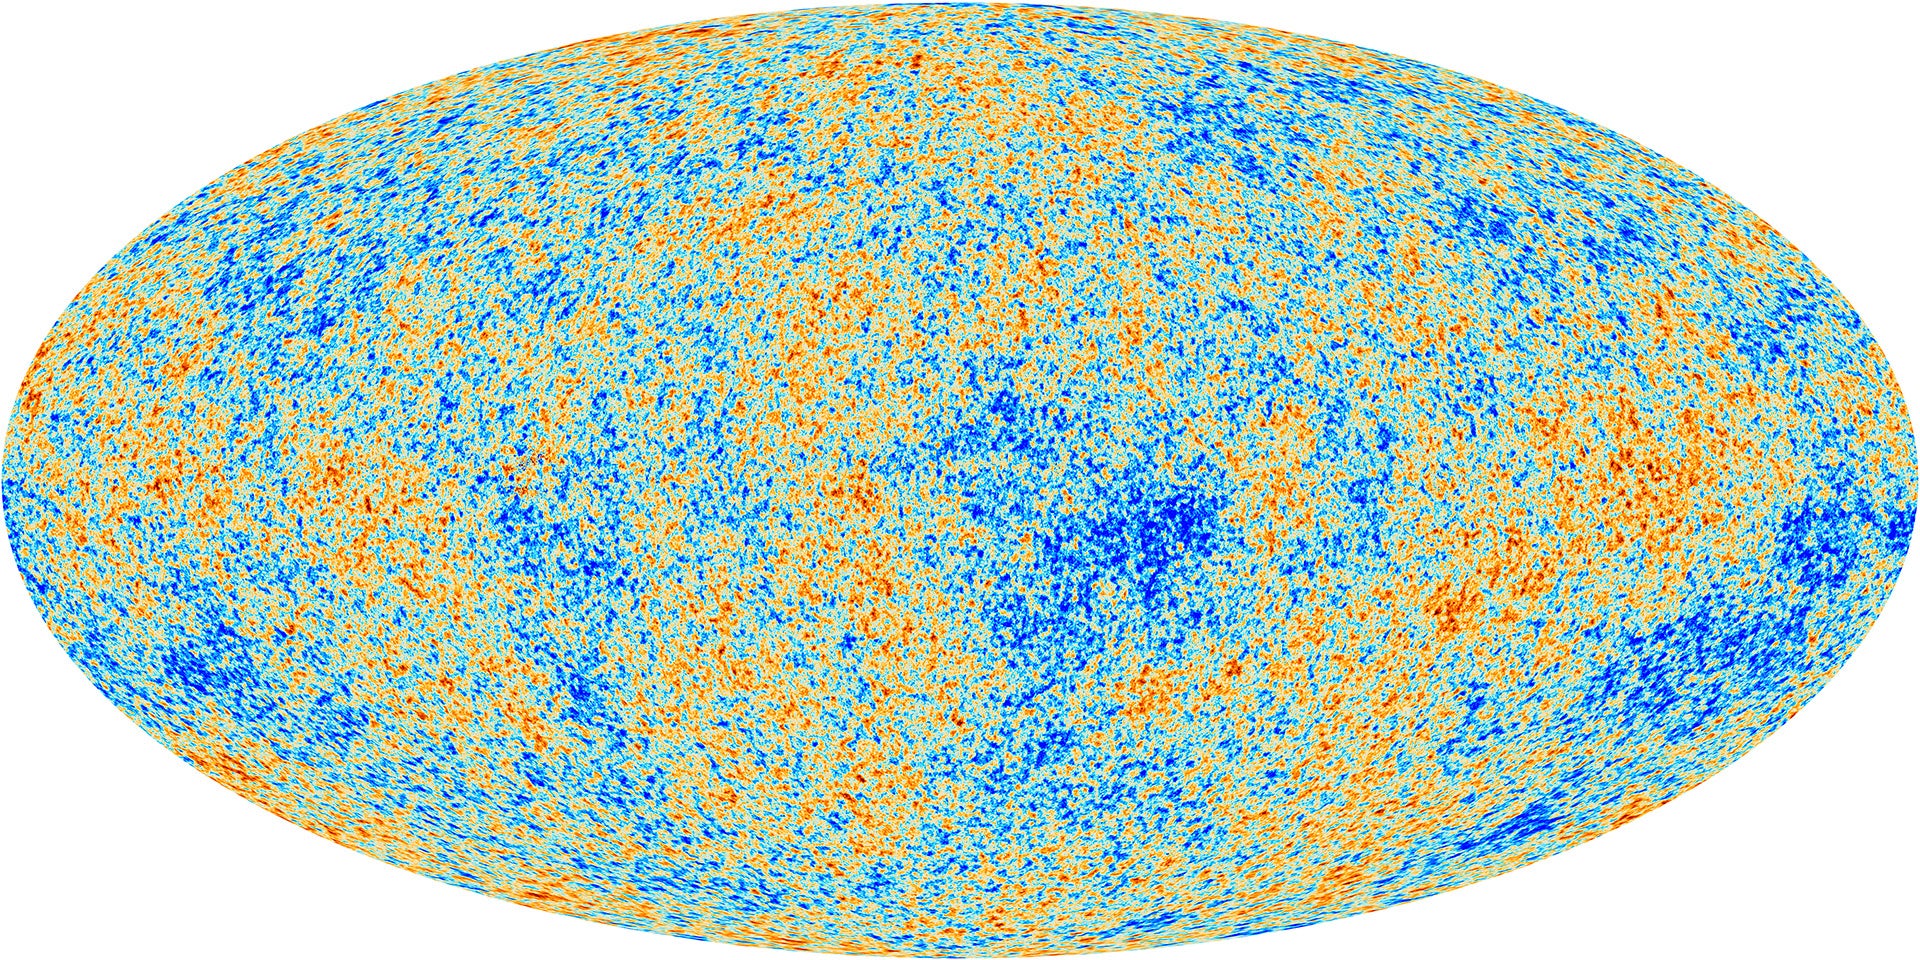 Il fondo cosmico a microonde visto dall'Osservatorio Planck dell'Agenzia spaziale europea.